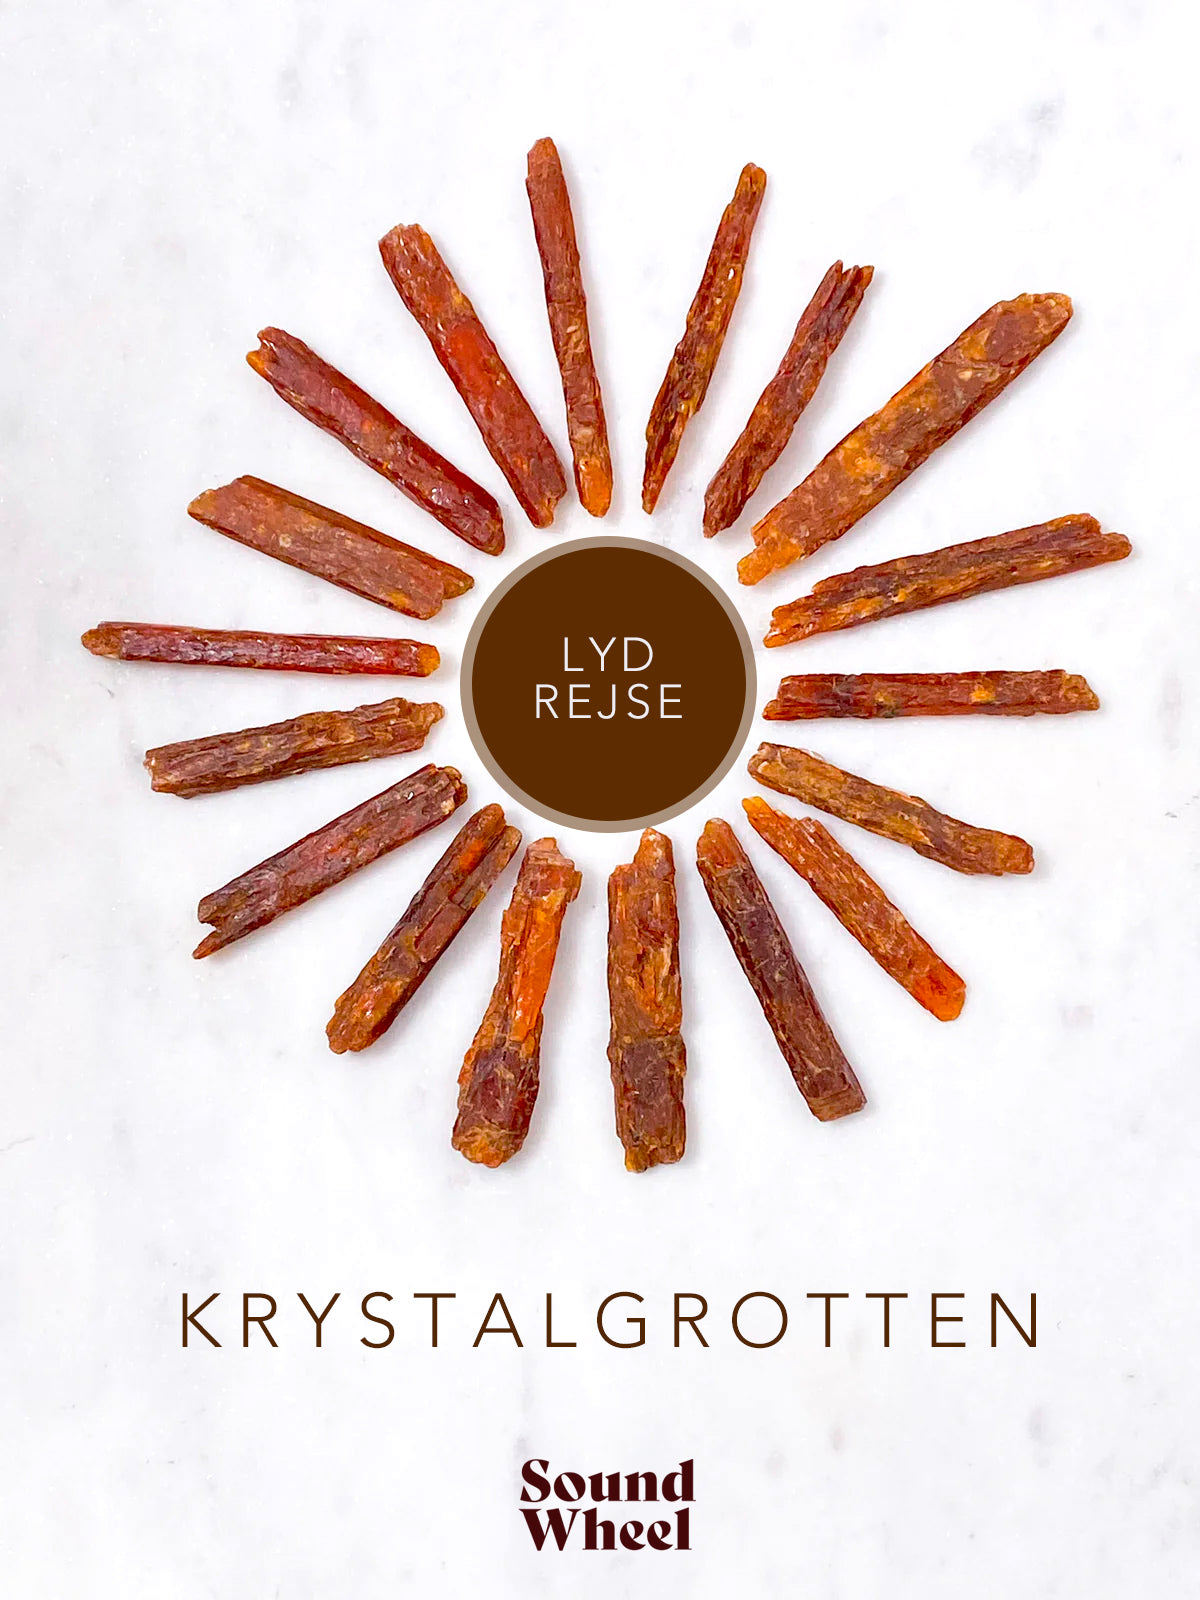 "Krystalgrotten" Lydrejse - Soundwheel